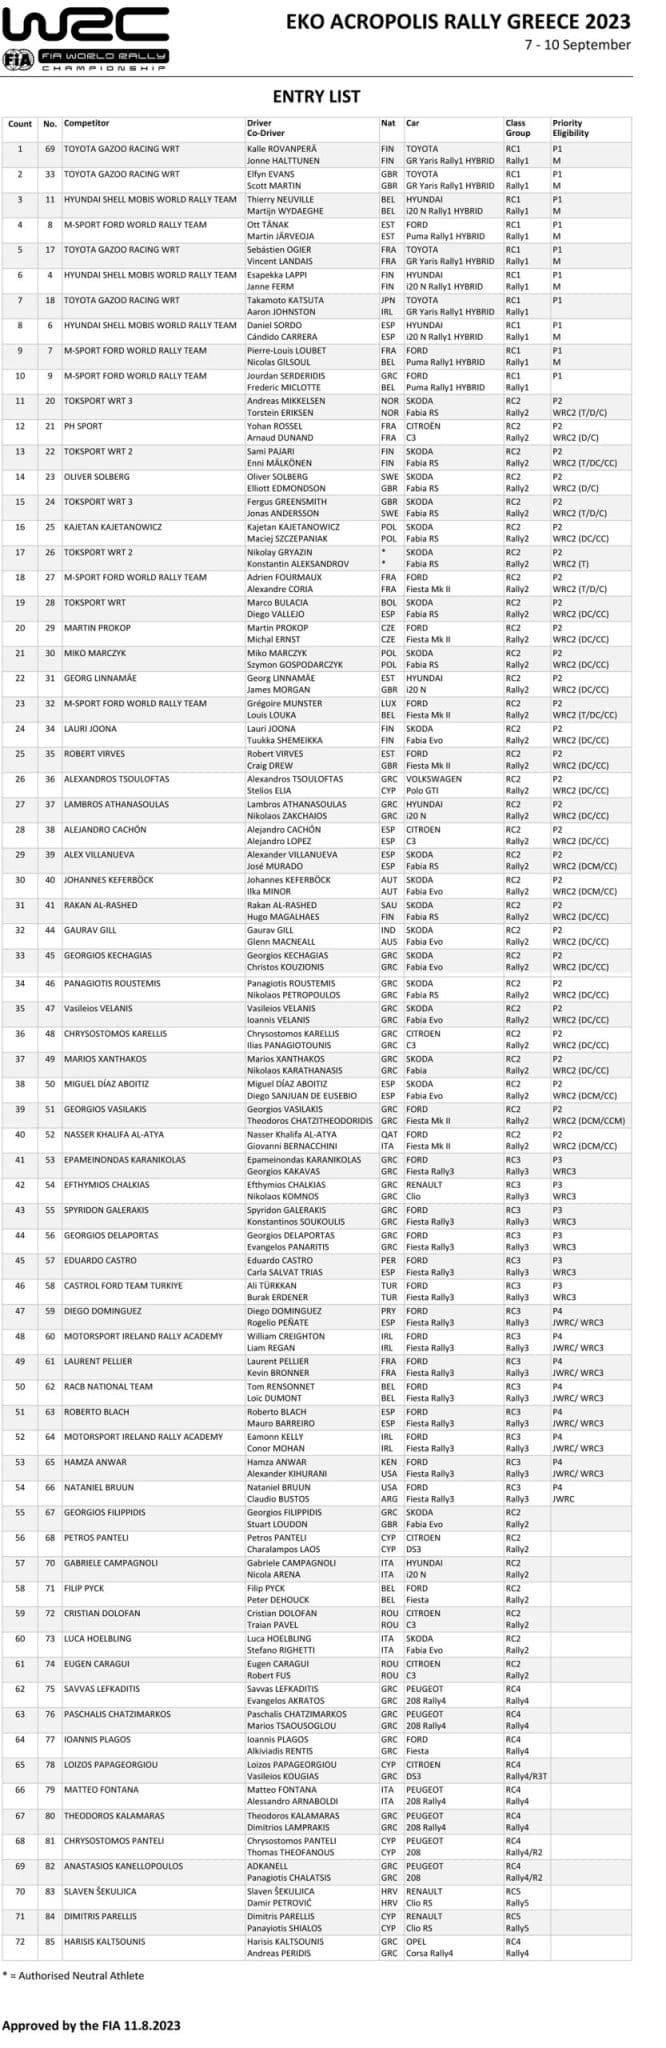 EKO Ράλλυ Ακρόπολις 2023: Με 72 πληρώματα το Ράλλυ των Θεών (λίστα)